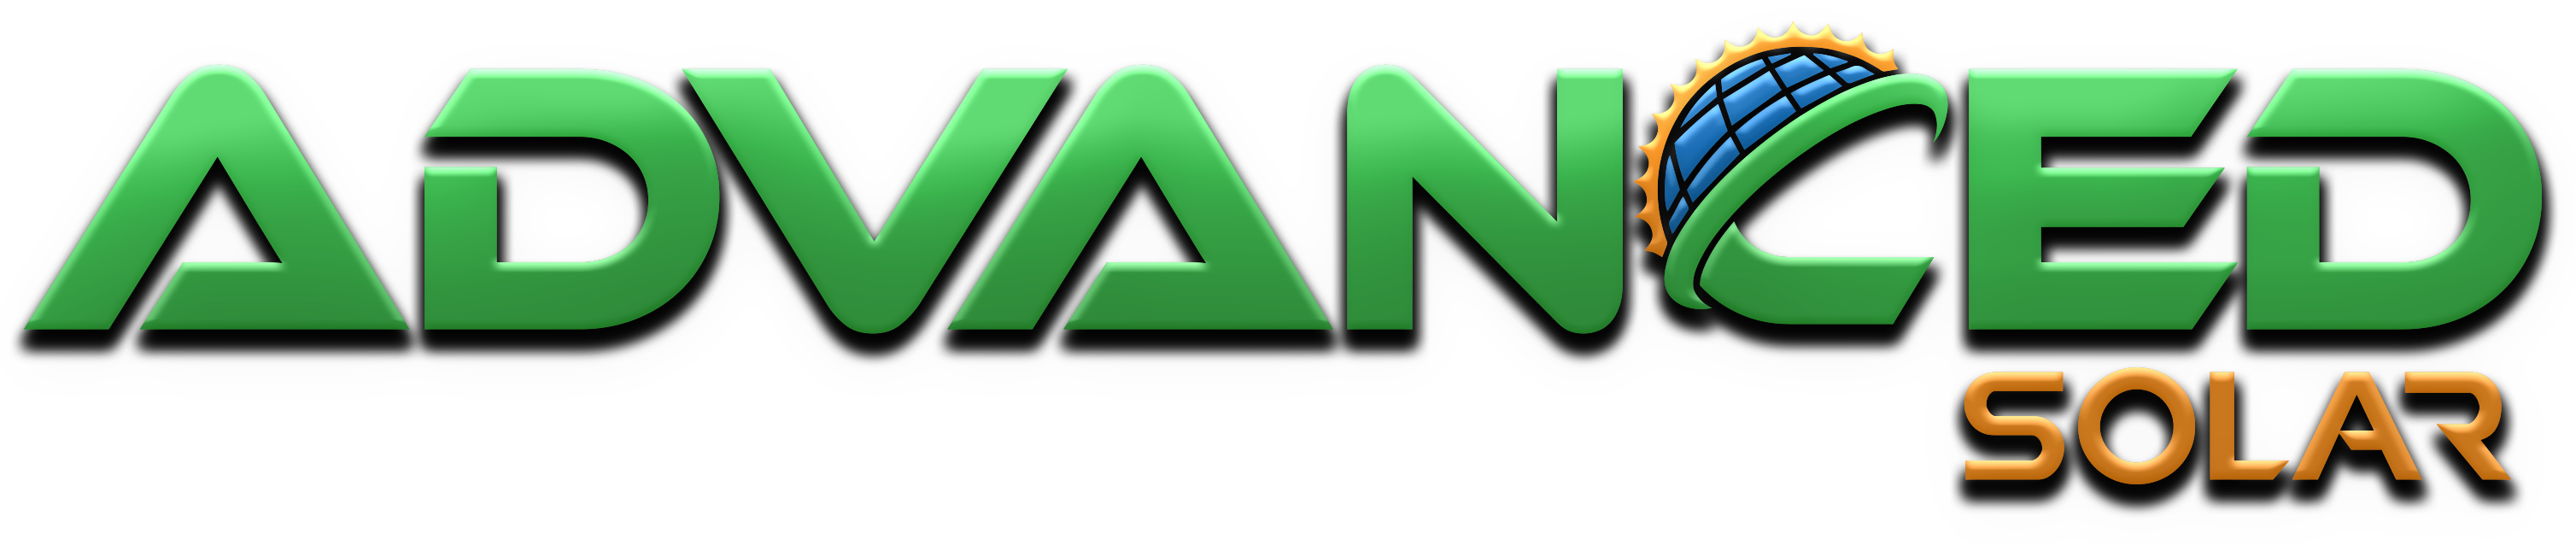 Advanced Solar - MD logo